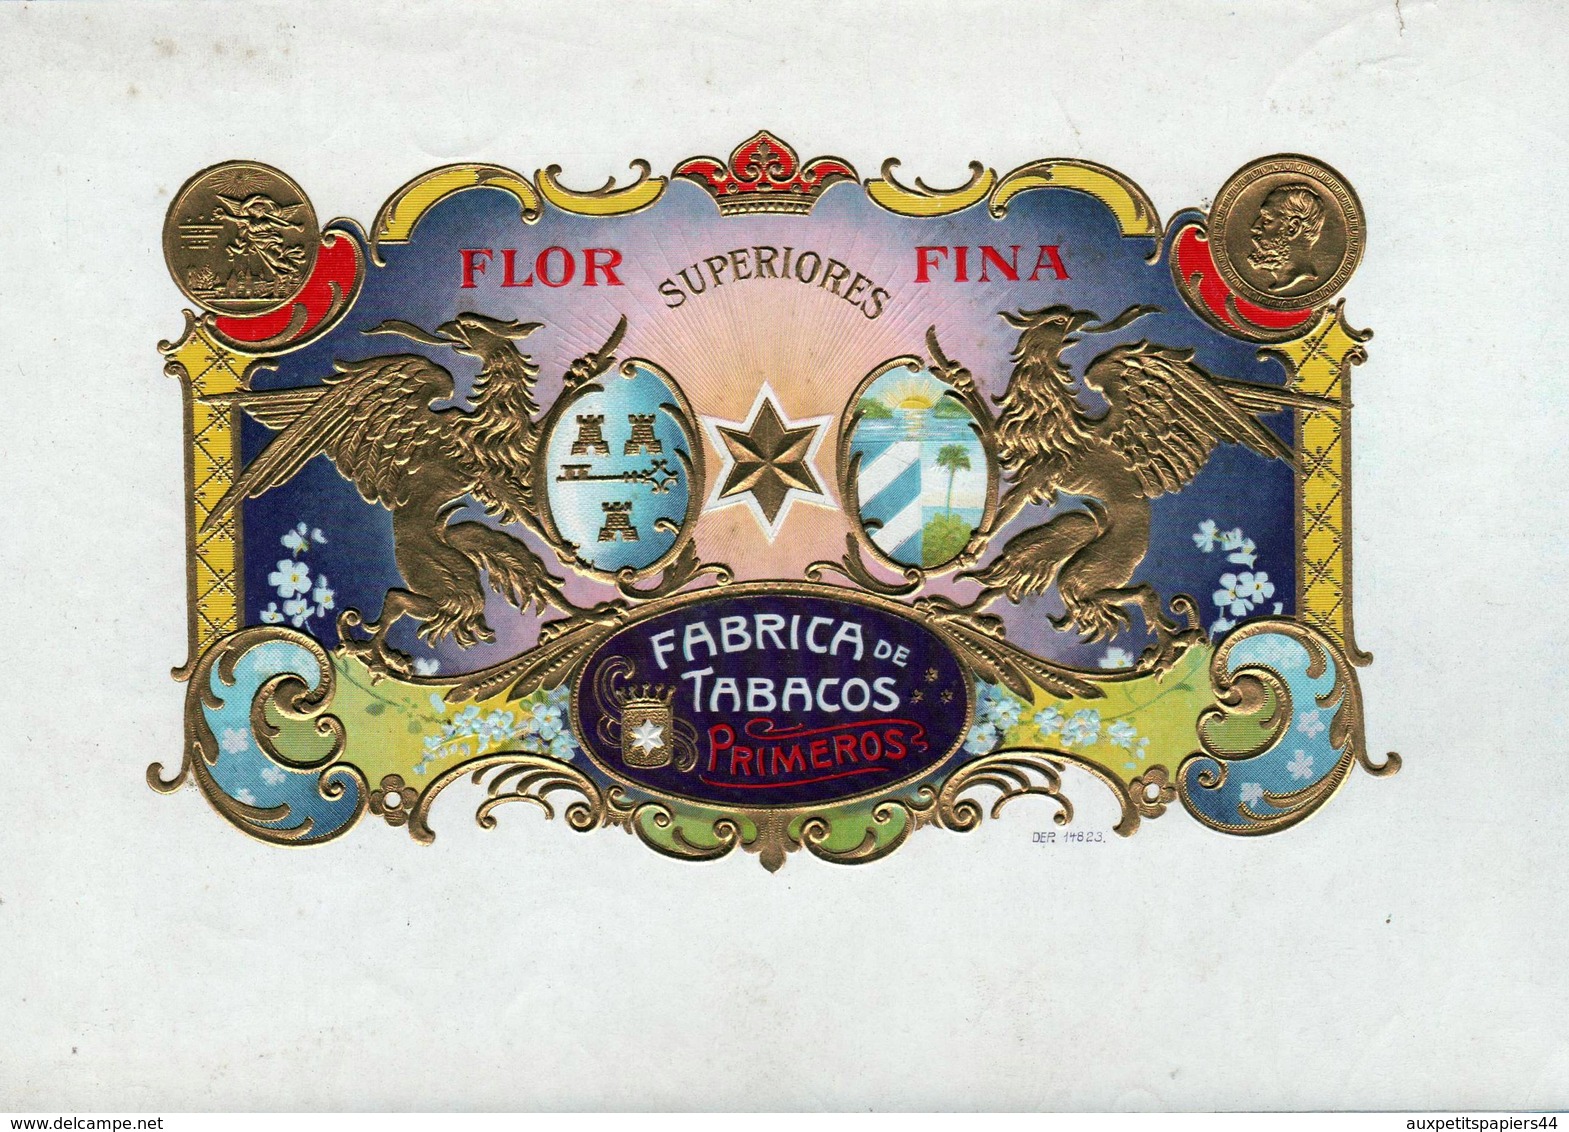 Collection 45 Anciennes étiquettes Dorées Gaufrées De Cigares Rosadora, Flor, Vigtoire, Esquisitos, Factoria, Diplomatic - Documents